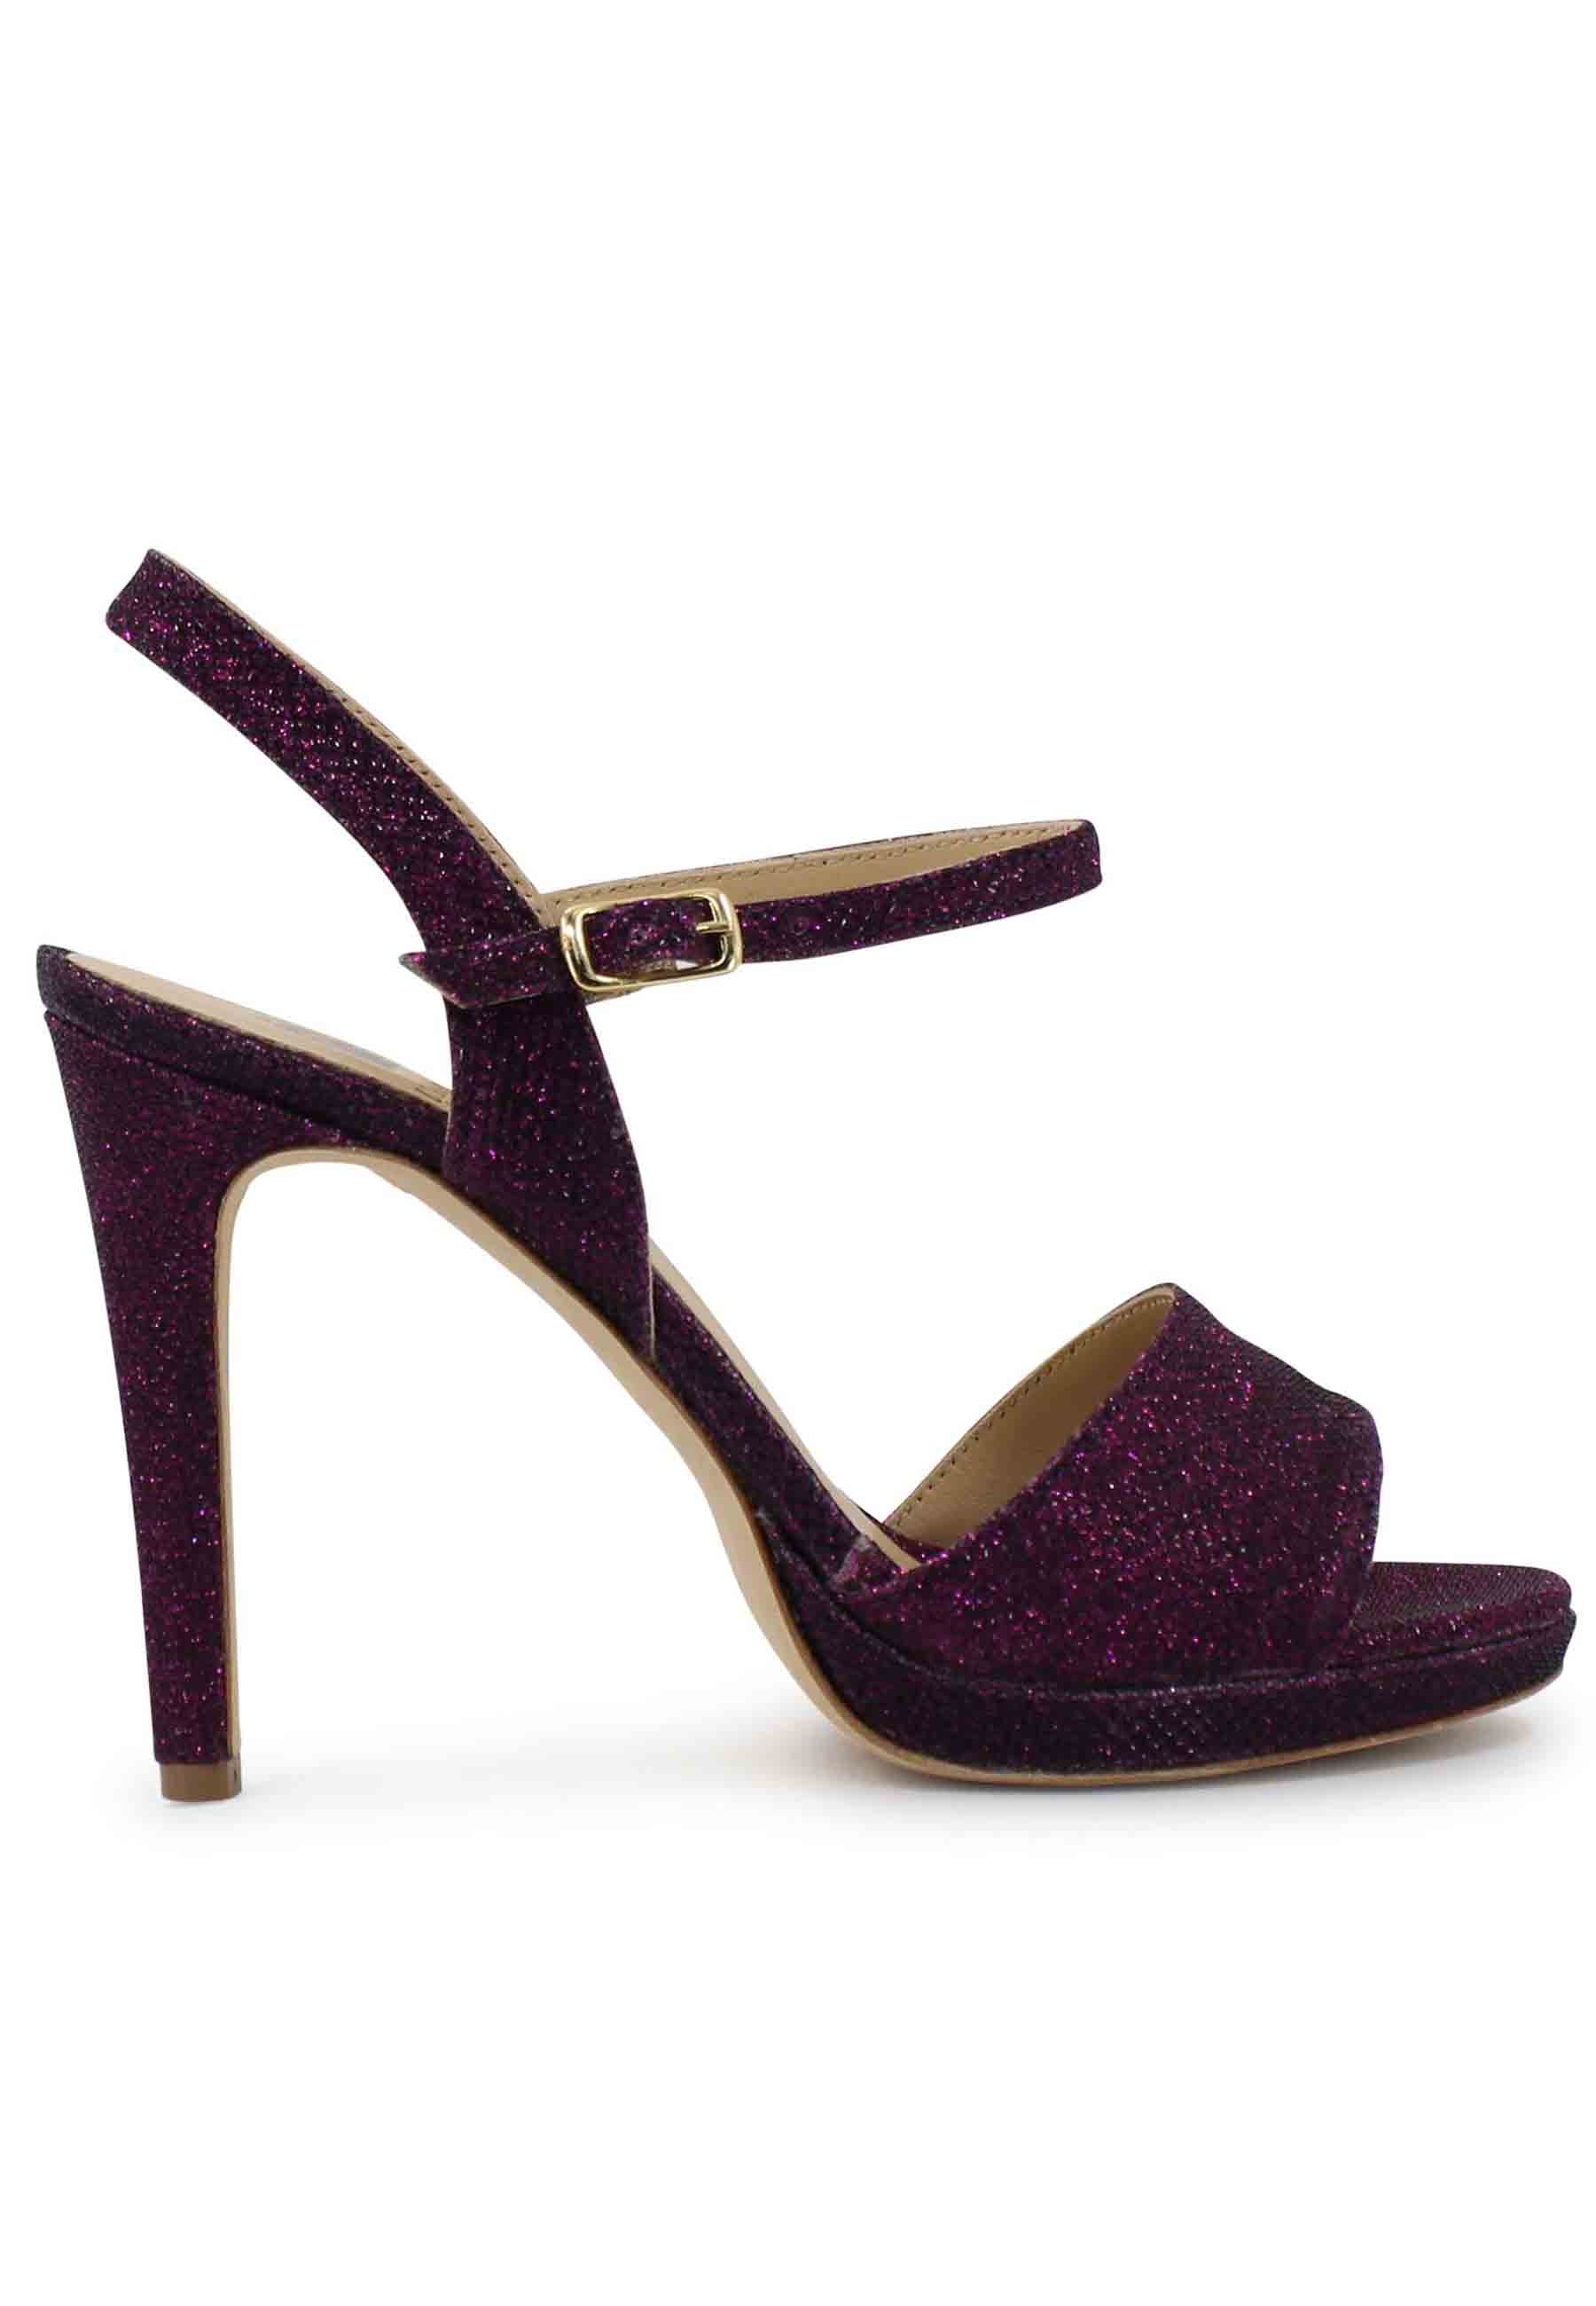 Women's purple glitter sandals with high stiletto heel